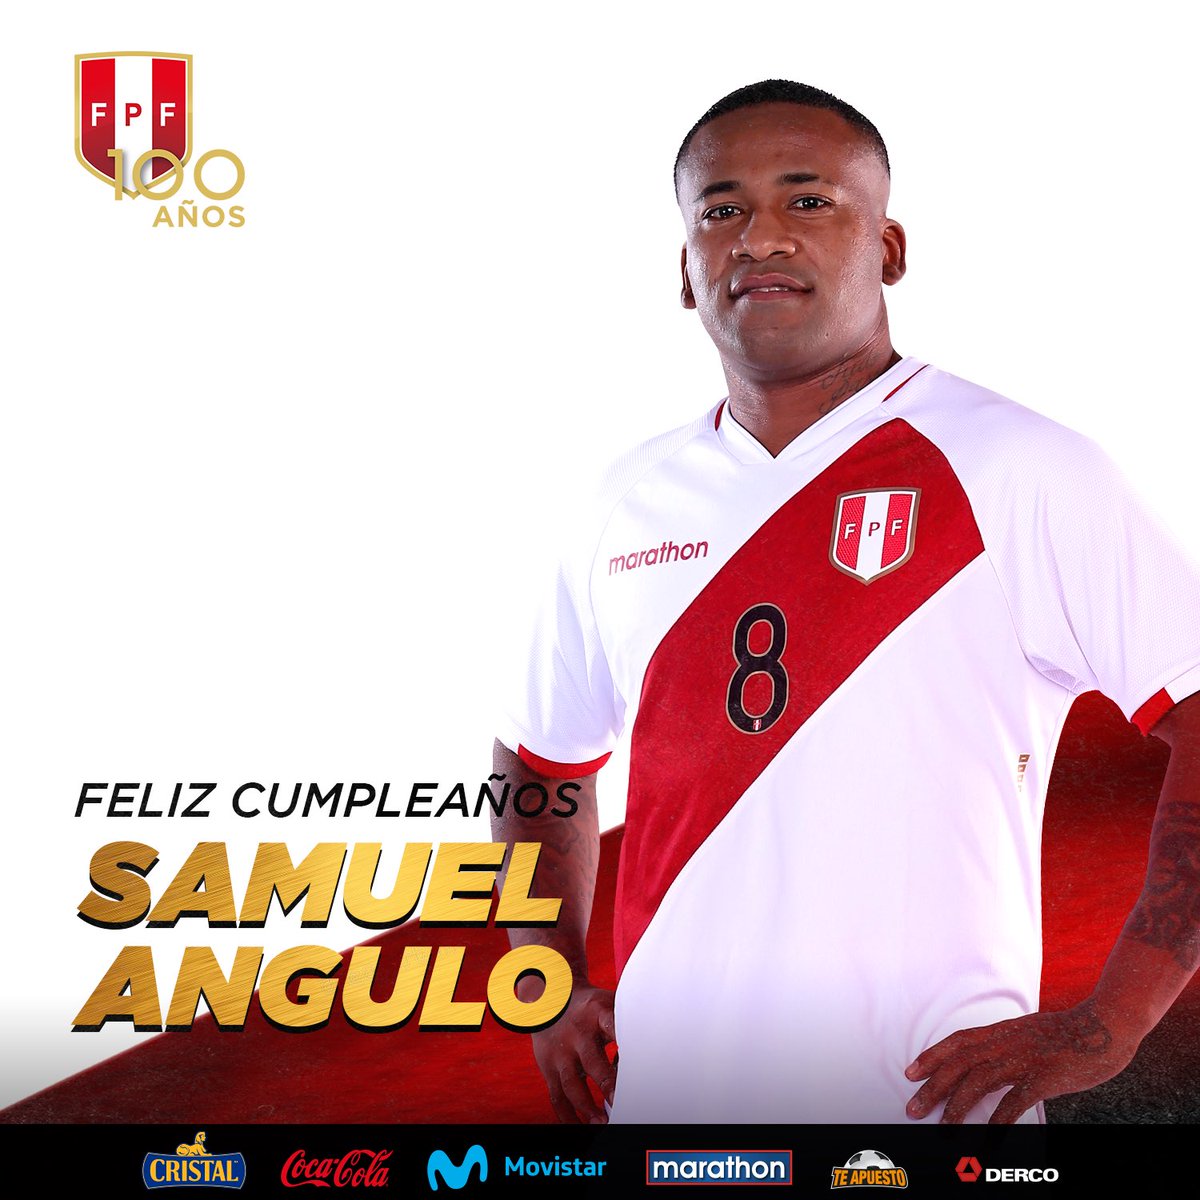 Saludamos afectuosamente a Samuel Angulo, jugador de nuestra @SeleccionPeru de Futsal 🇵🇪, en el día de su cumpleaños. ¡Muchas felicidades y los mejores deseos! 🎉 #ArribaPerú 💪🏼